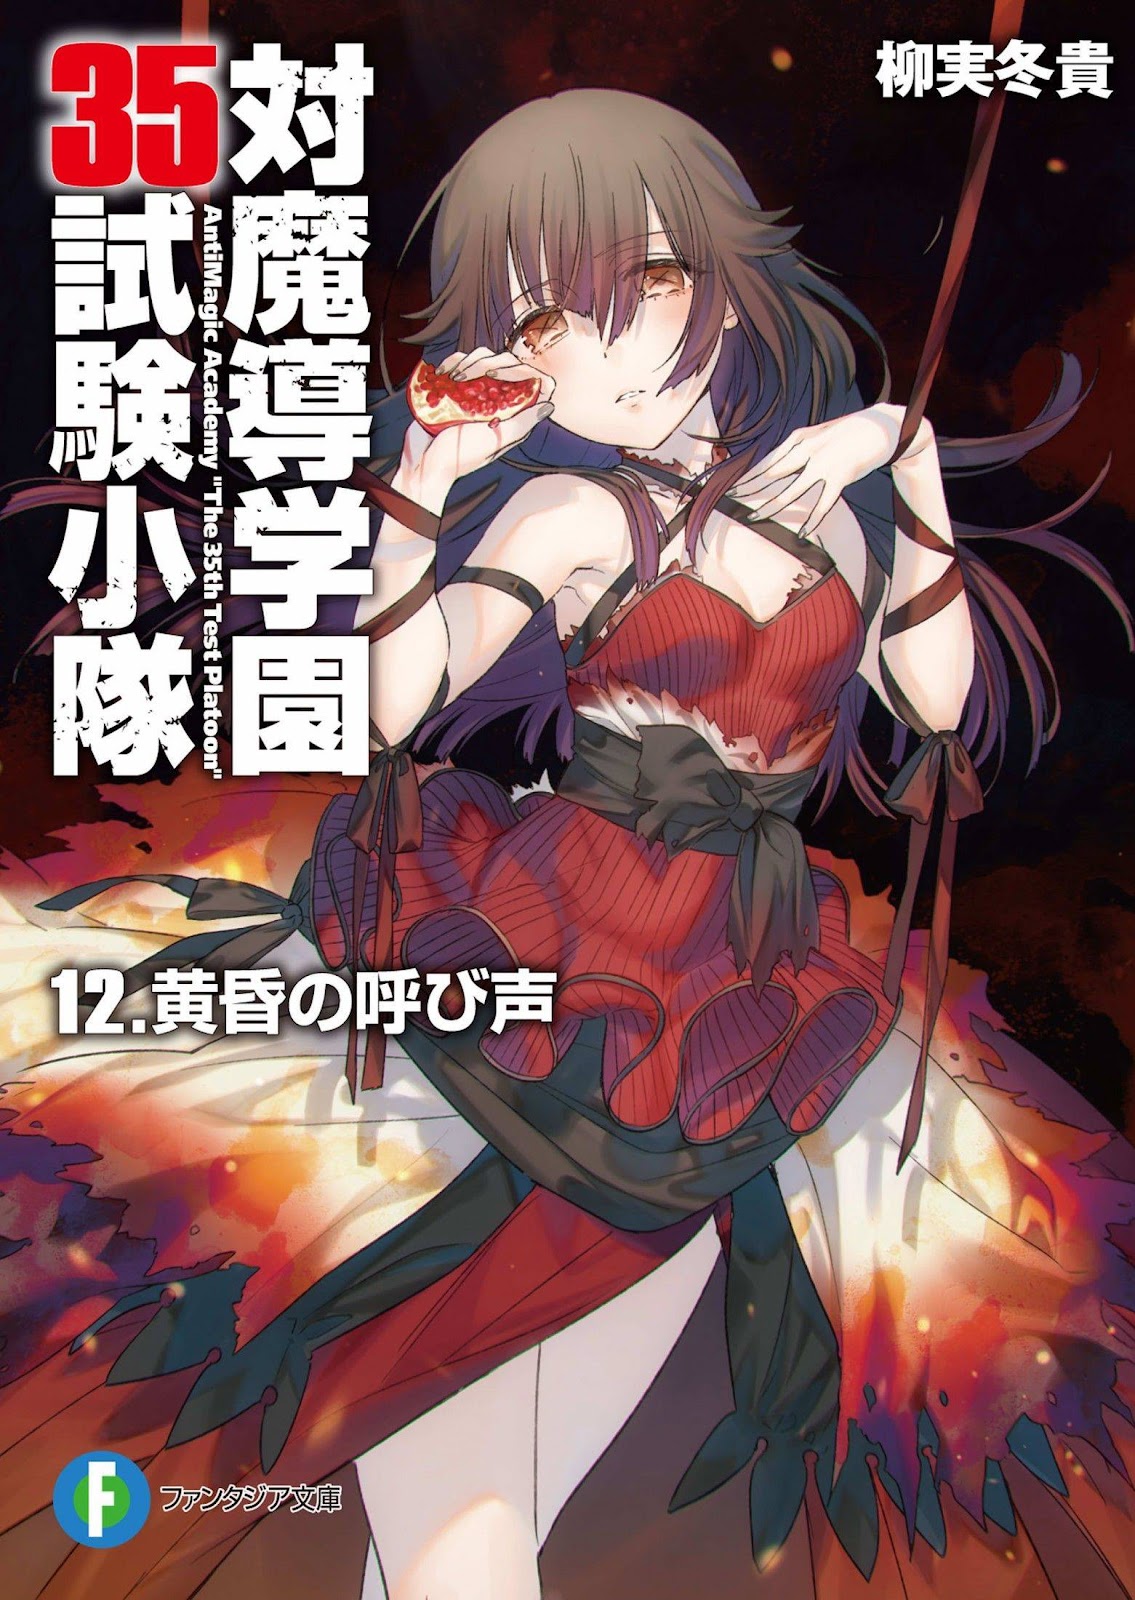 [Ruidrive] - Ilustrasi Light Novel Taimadou Gakuen 35 Shiken Shoutai - Volume 12 - 01